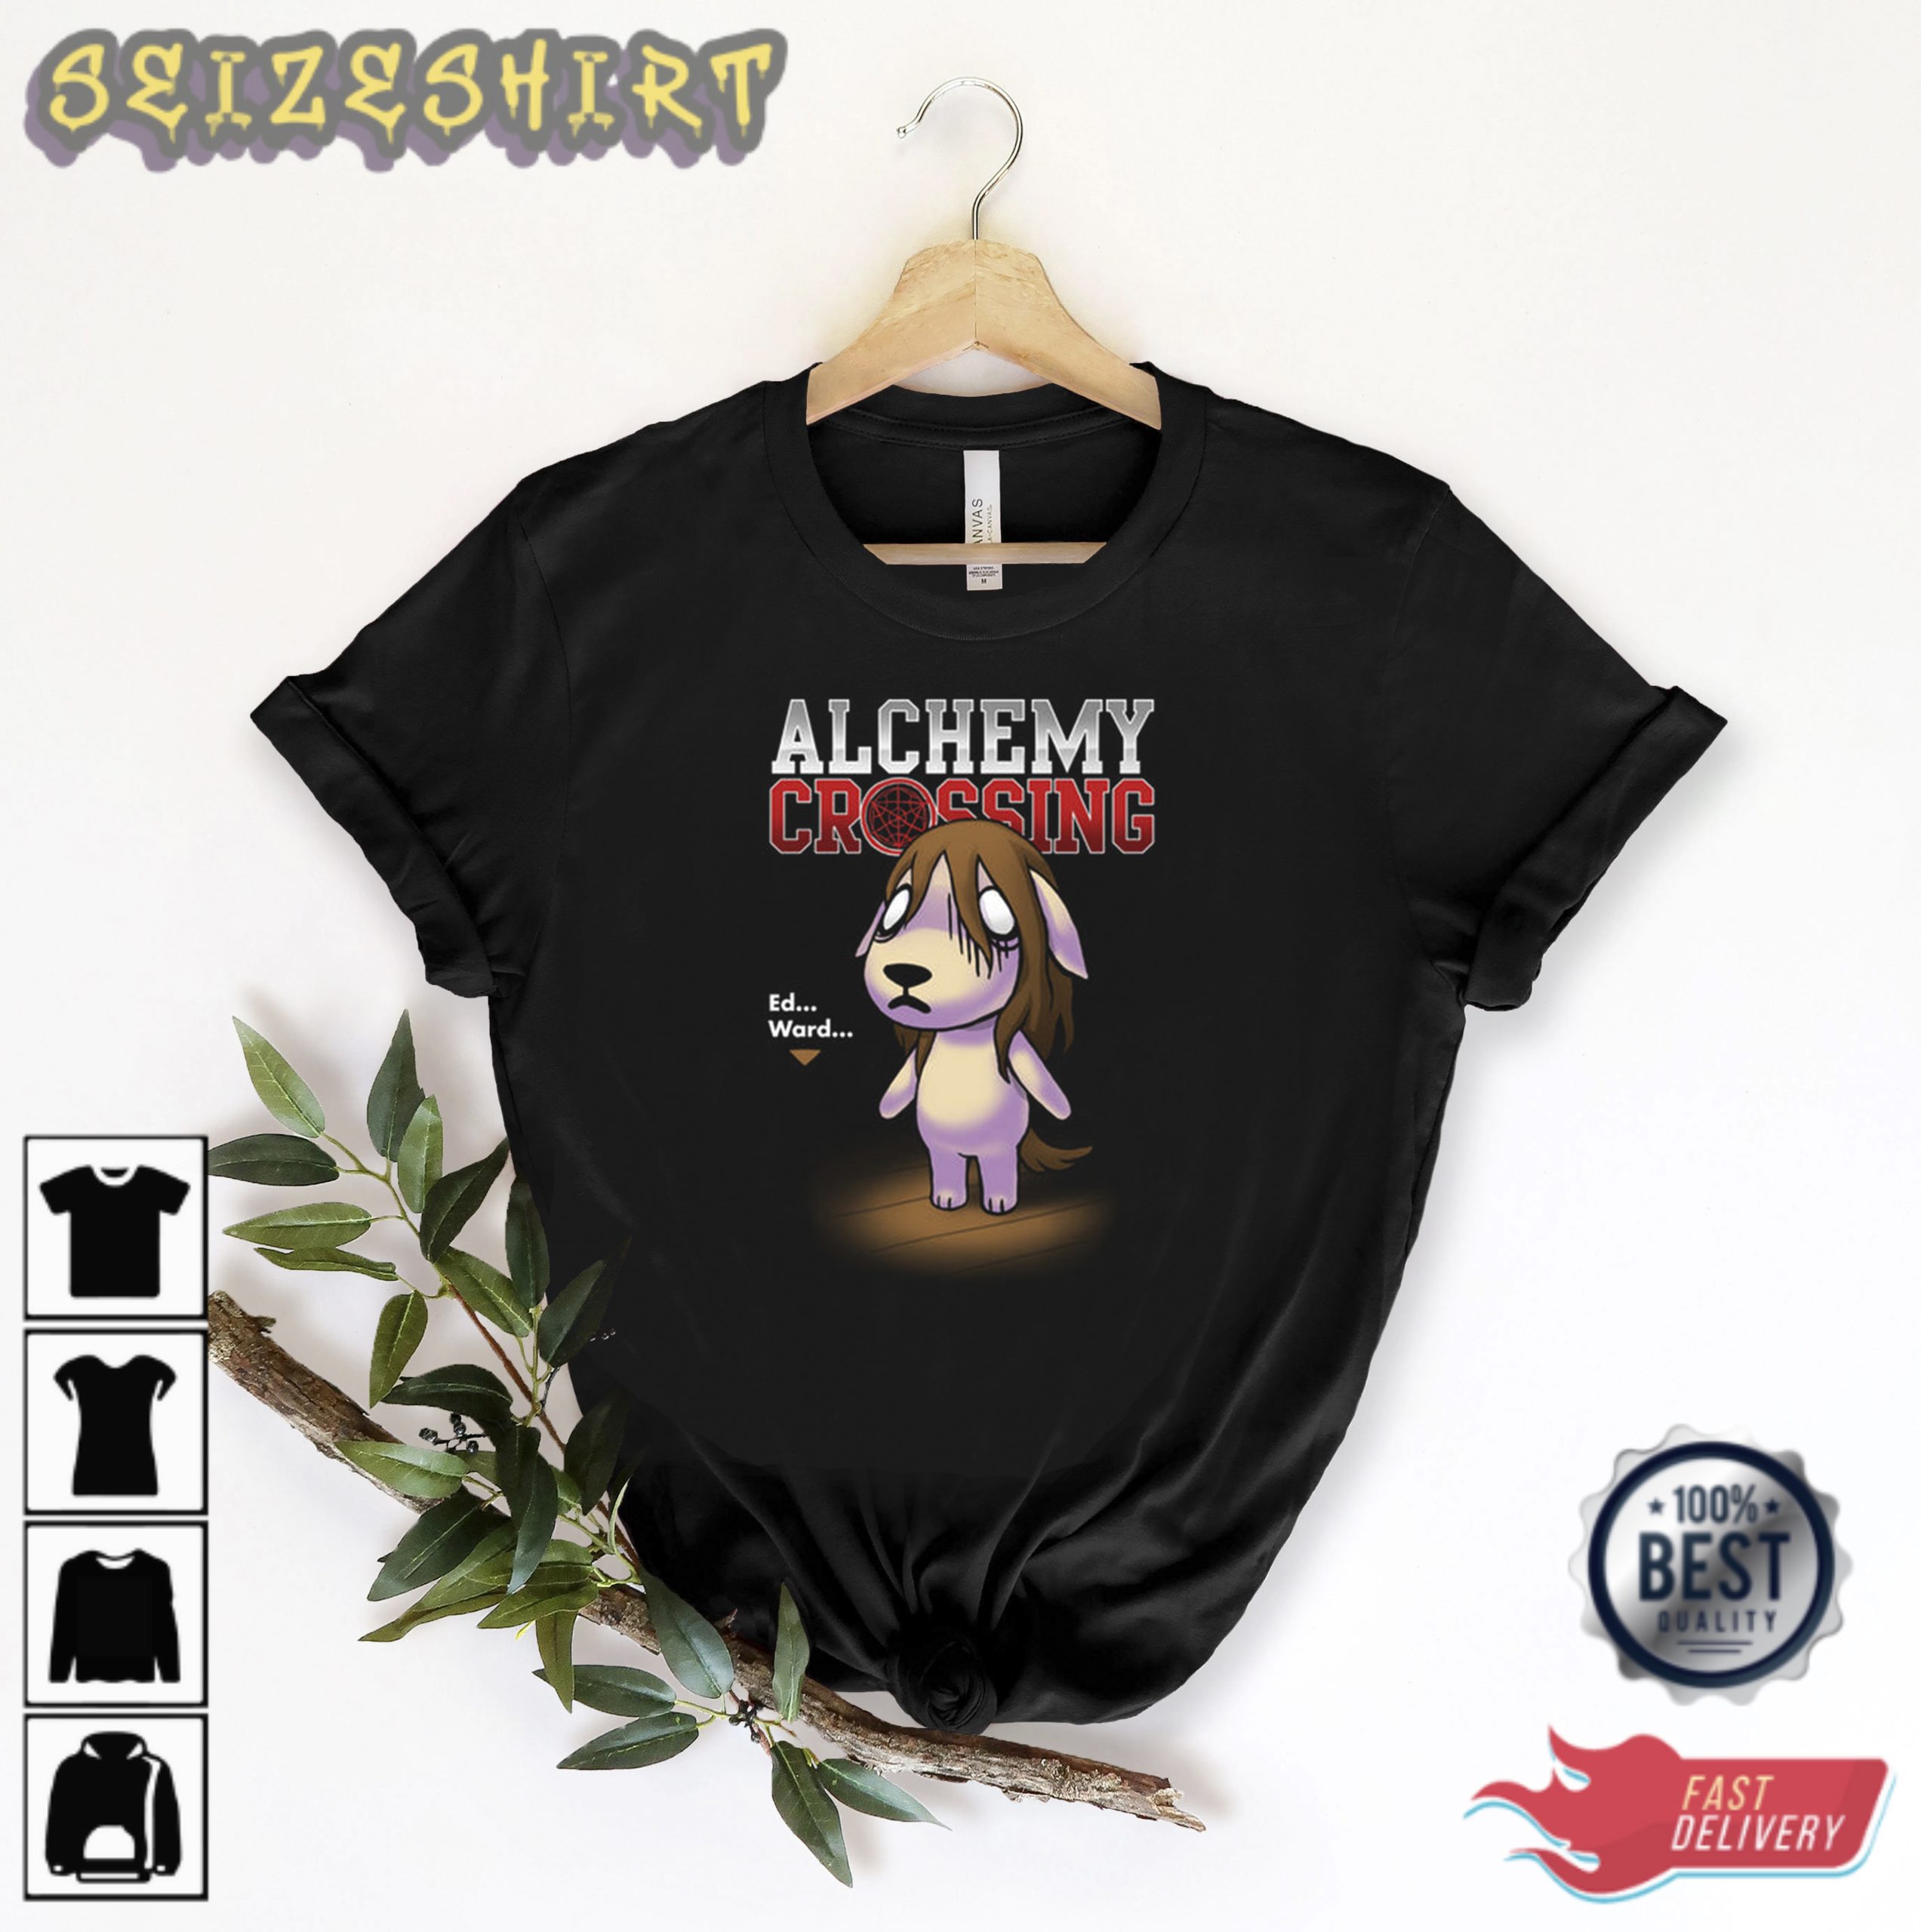 Alchemy Crossing Ed Ward Graphic Shirt